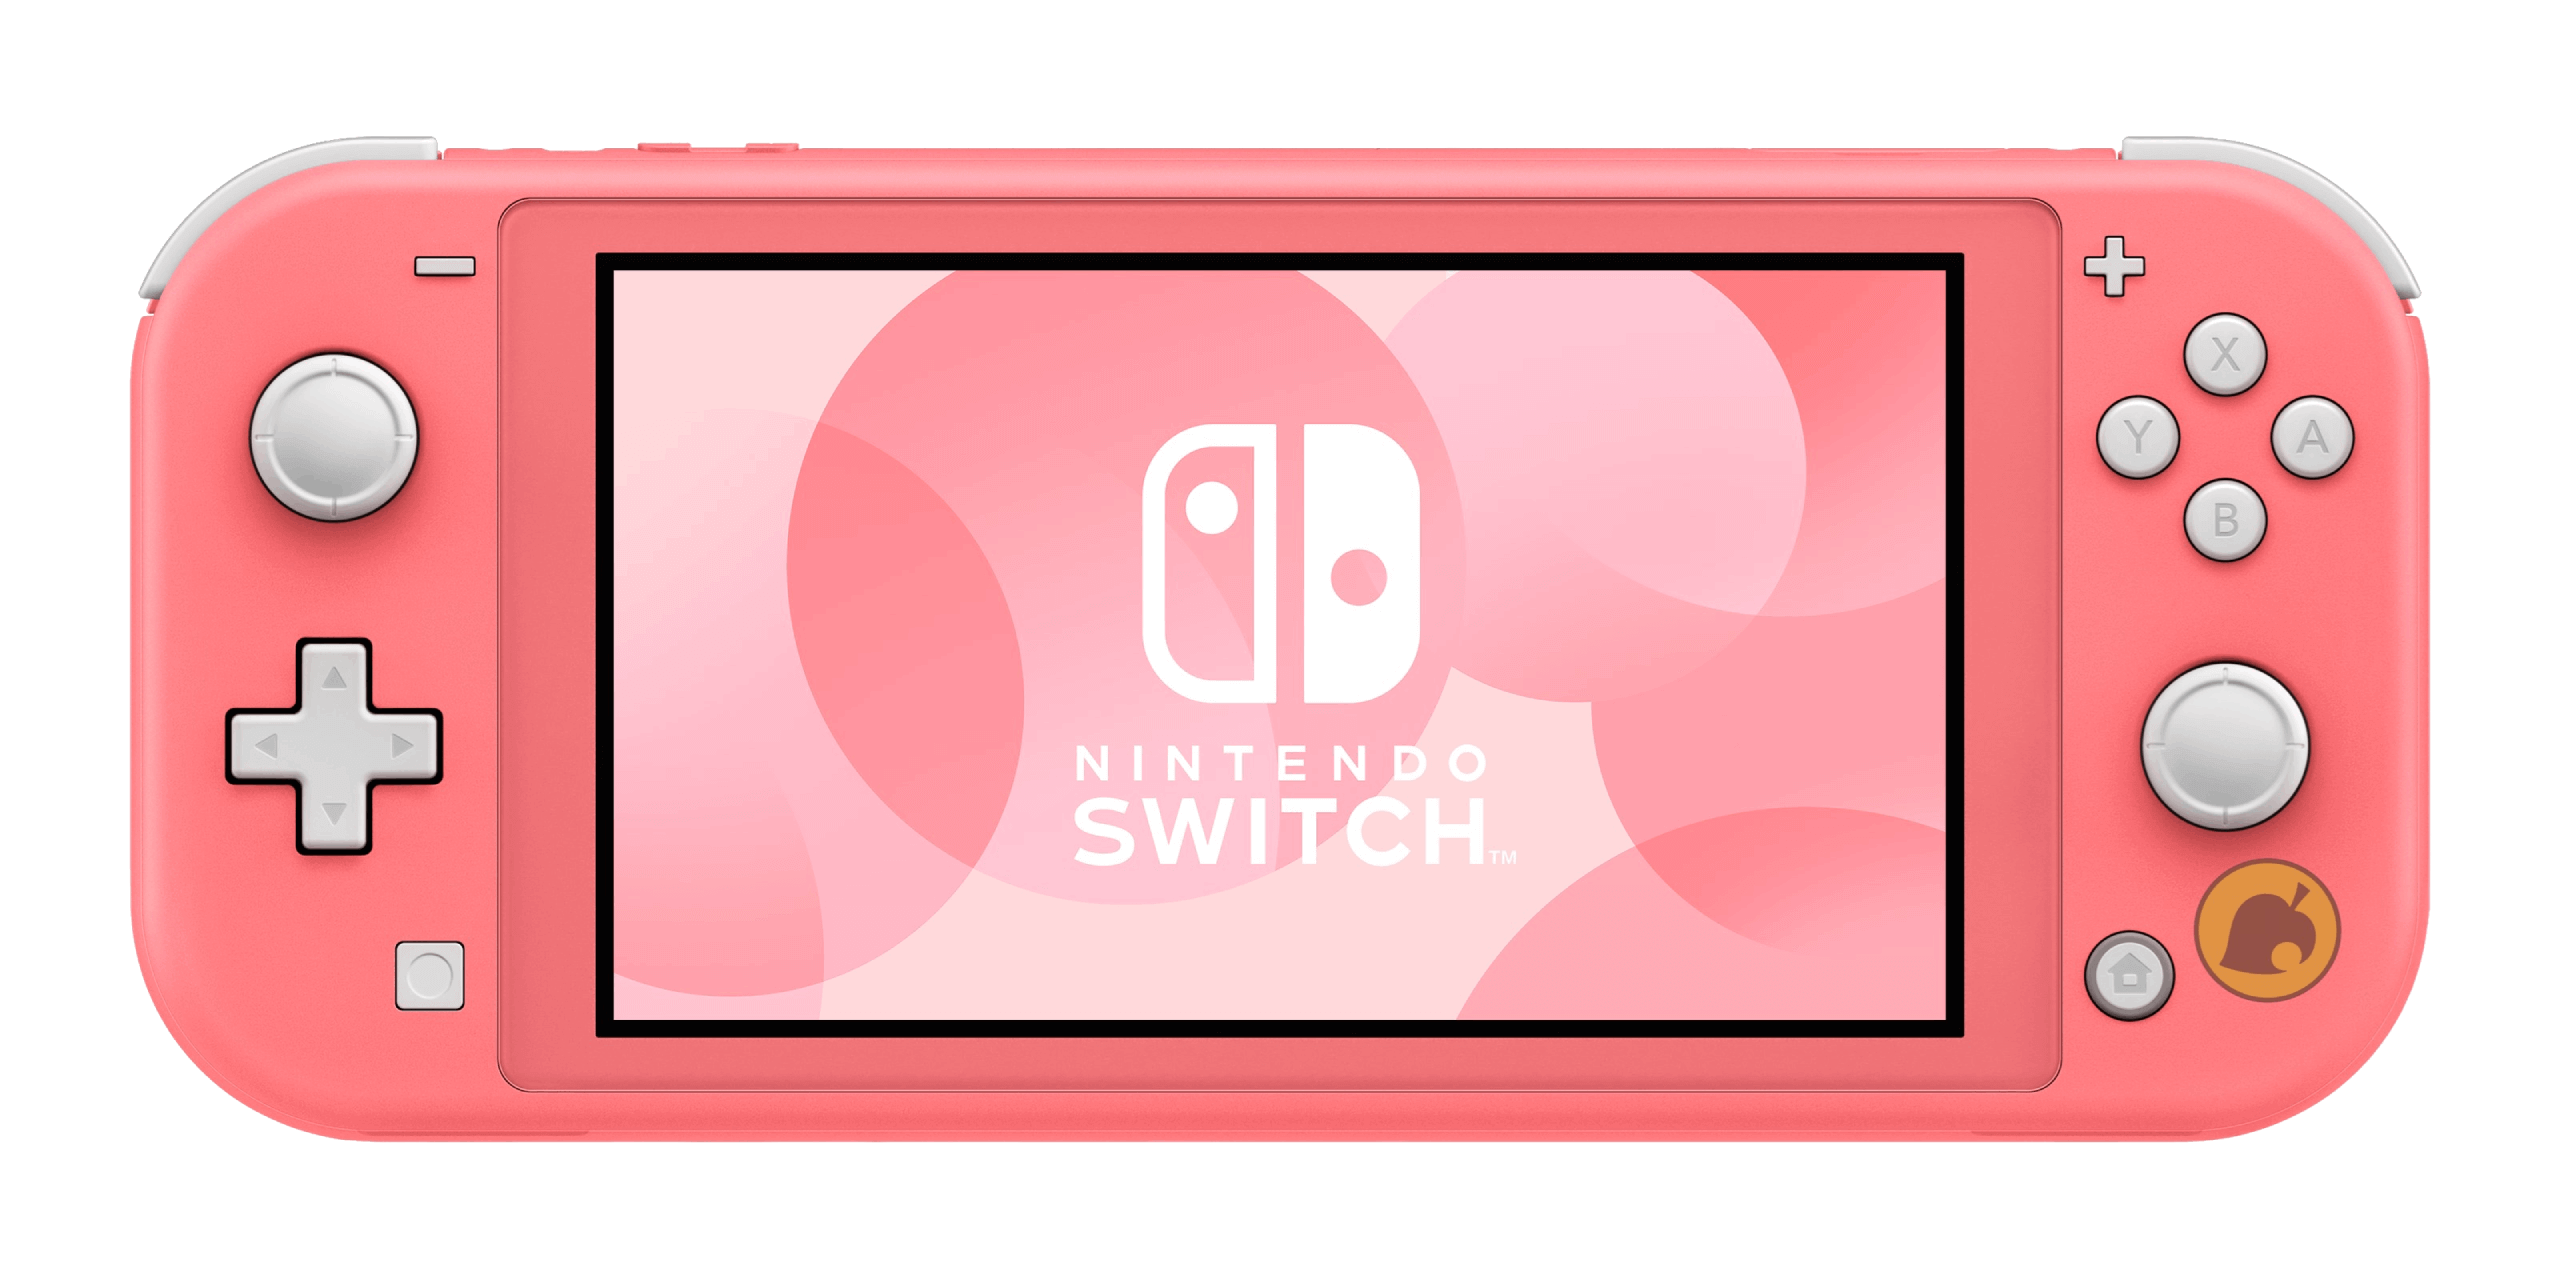 Novos modelos temáticos do Nintendo Switch estão a caminho do Brasil! -  Aigis